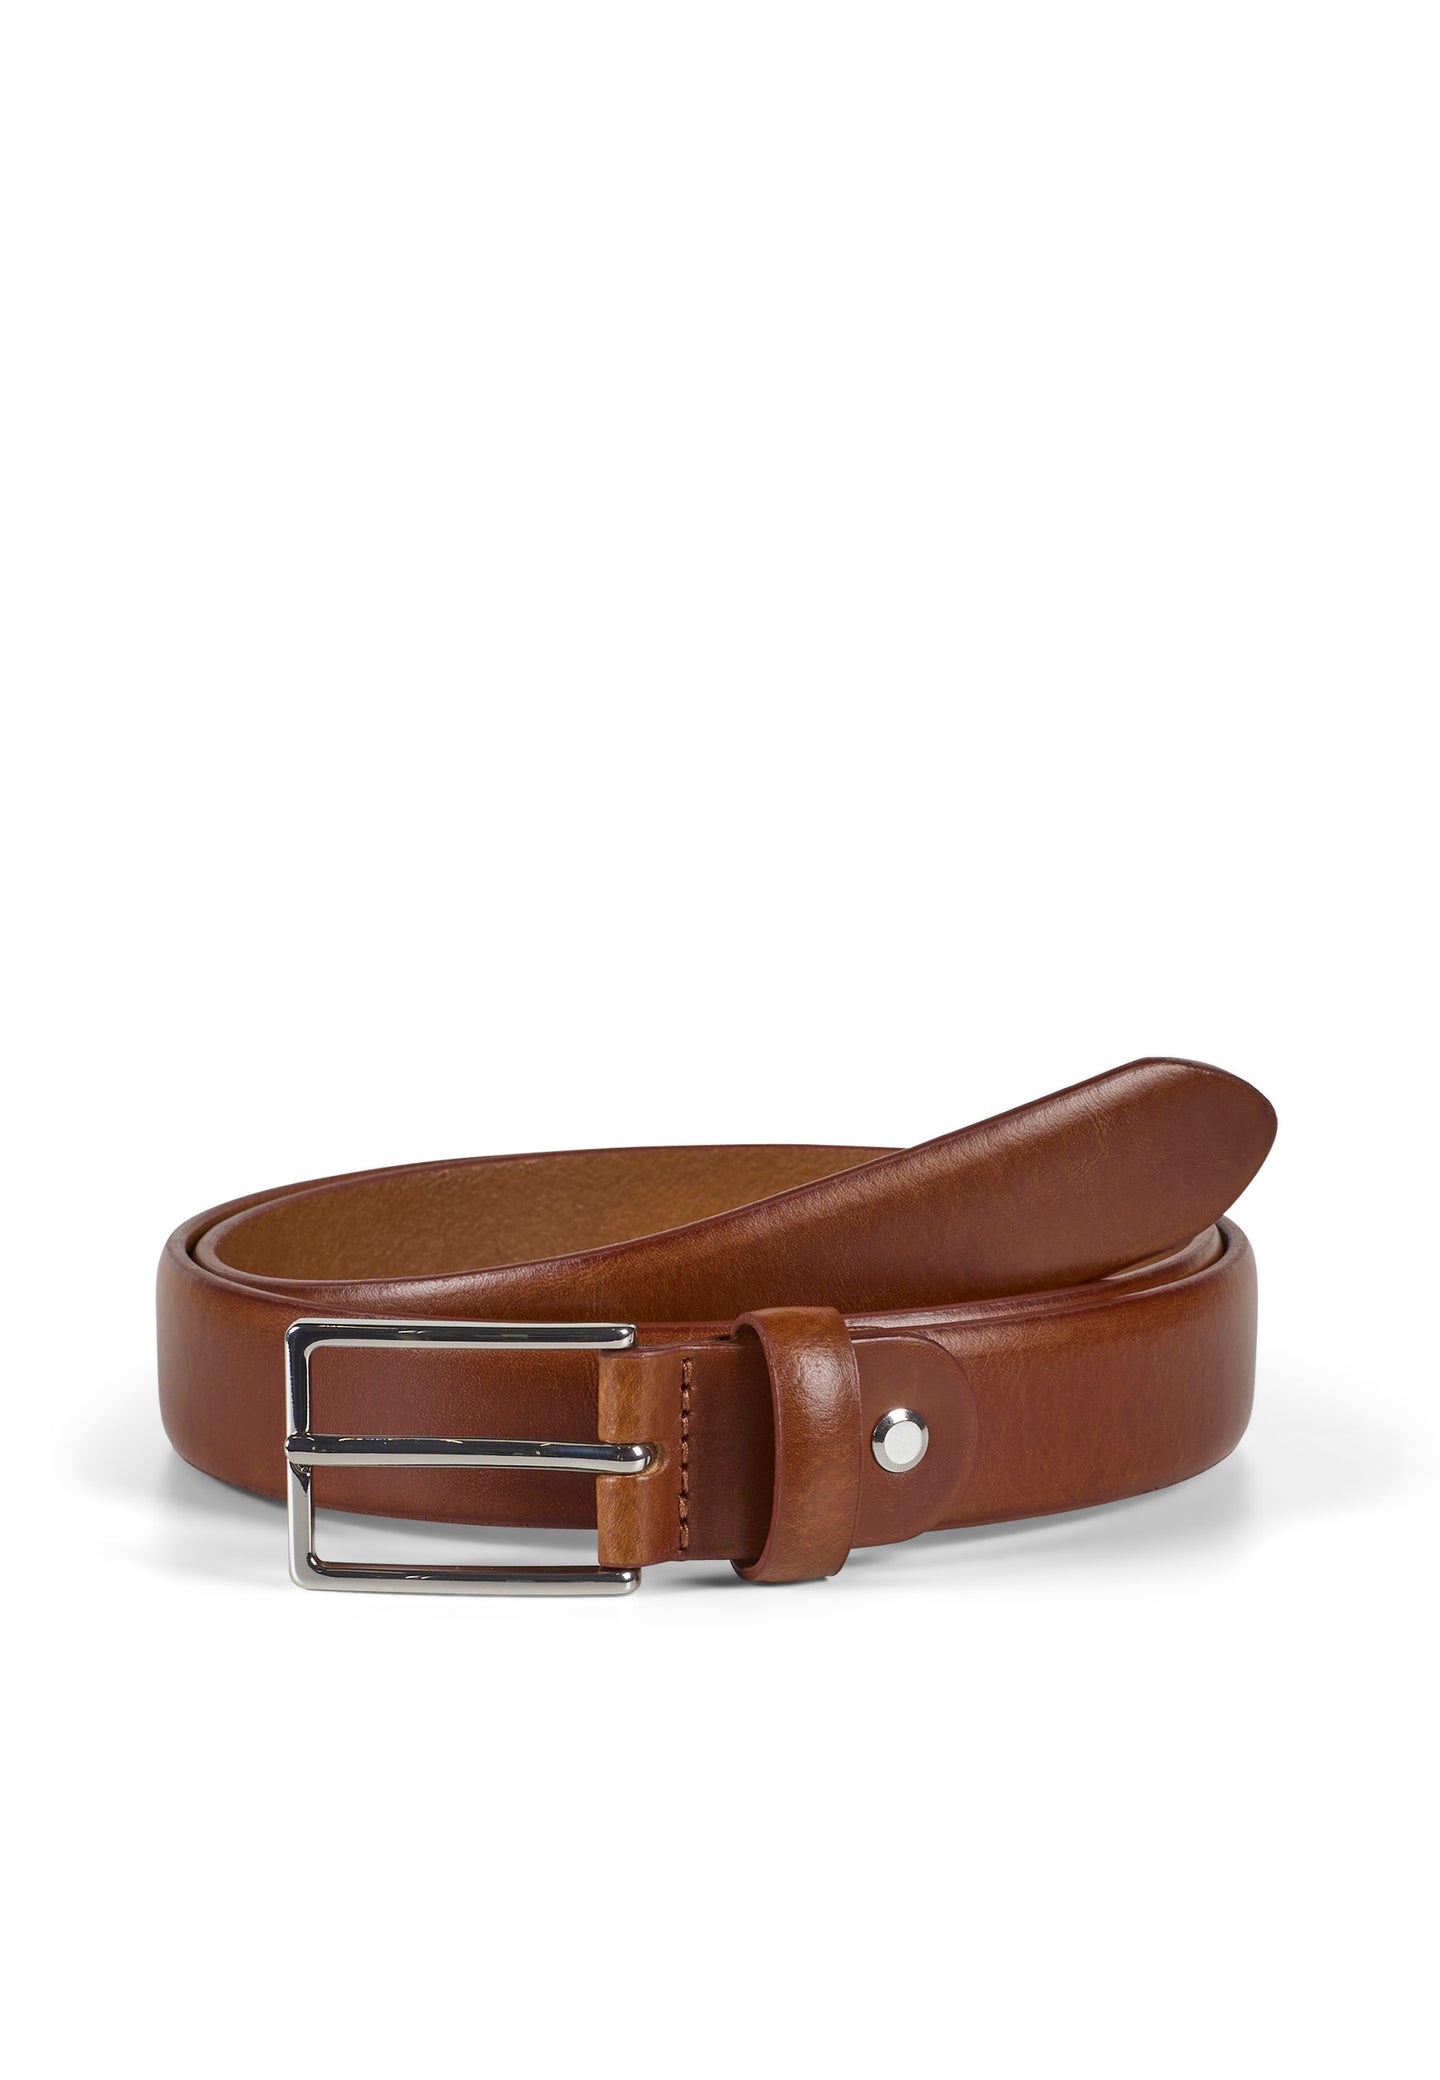 Leather belt Allen Brown - Howard London